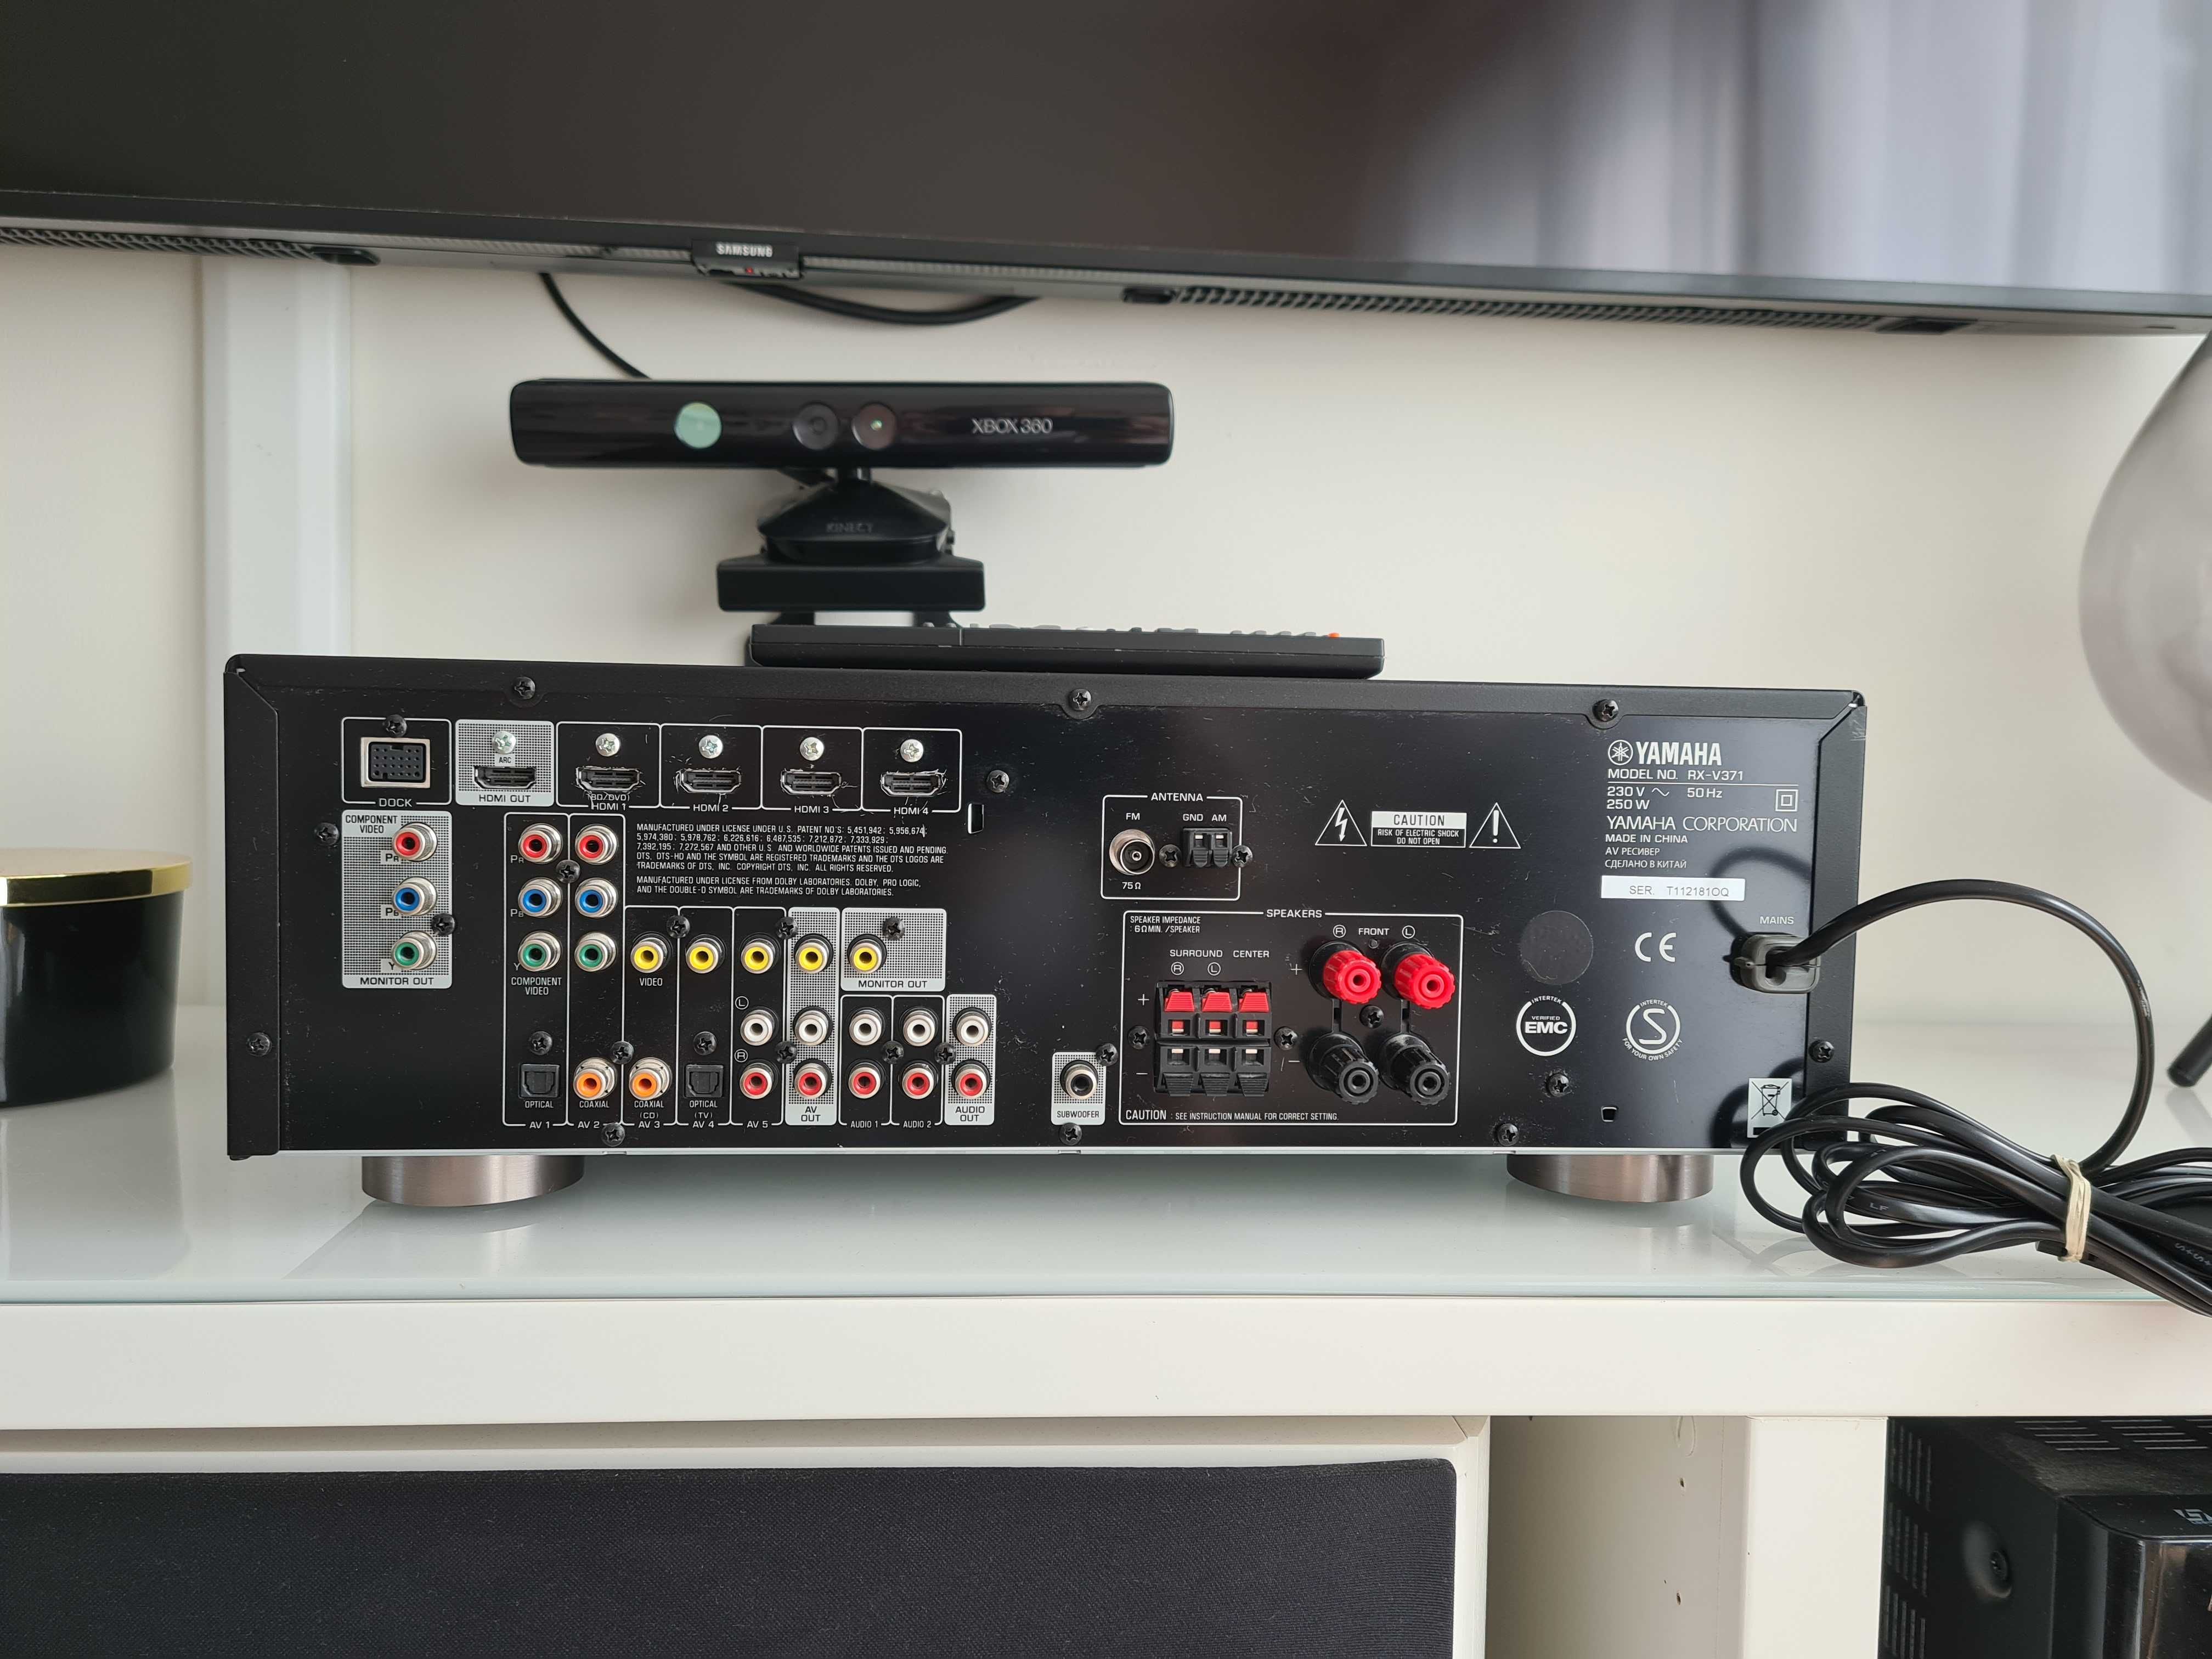 OKAZJA Amplituner wzmacniacz Yamaha rx v371 hdmi arc 5.1 kino domowe